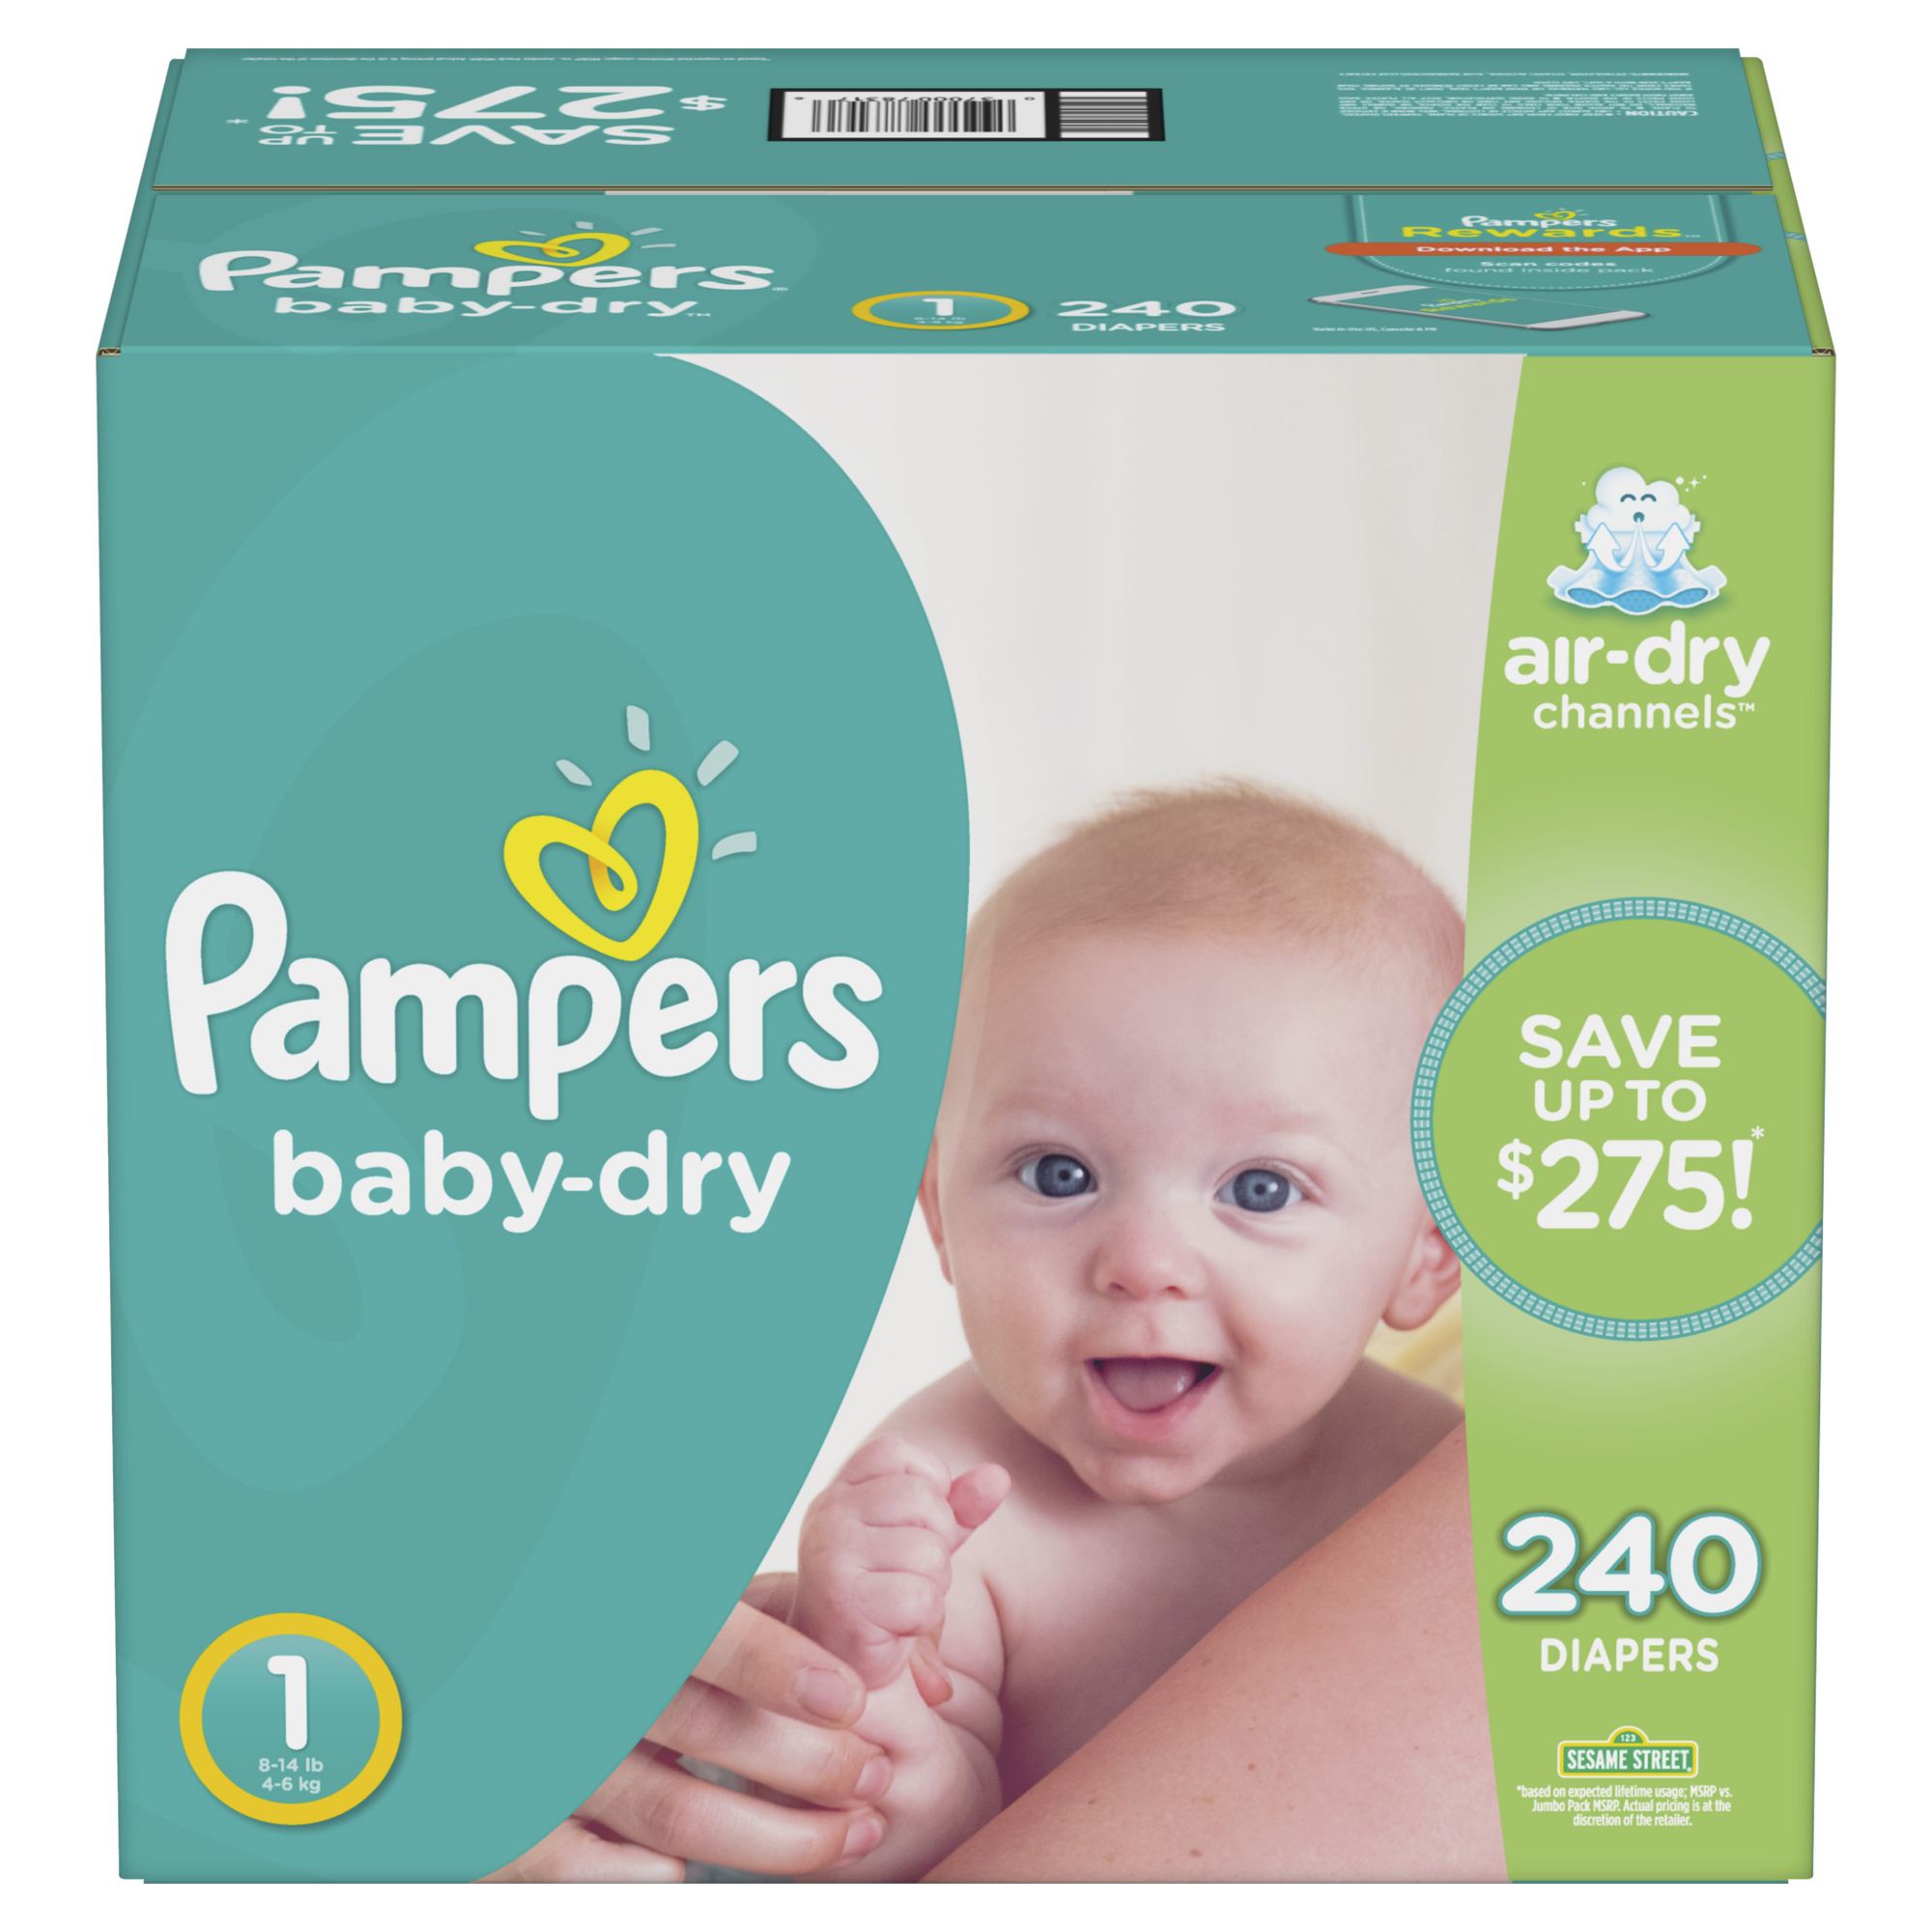 bjs baby diapers